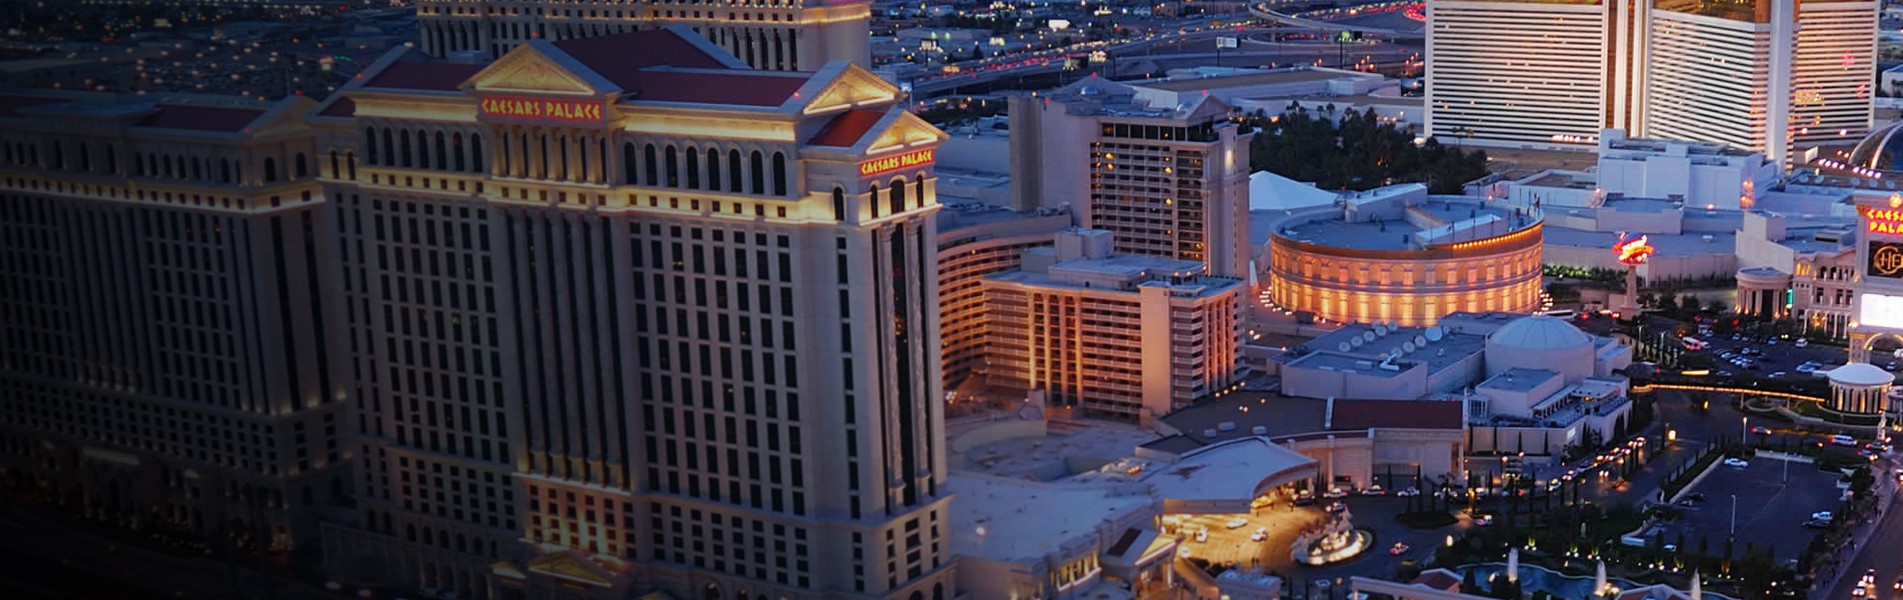 Caesars Palace Casino Las Vegas 1